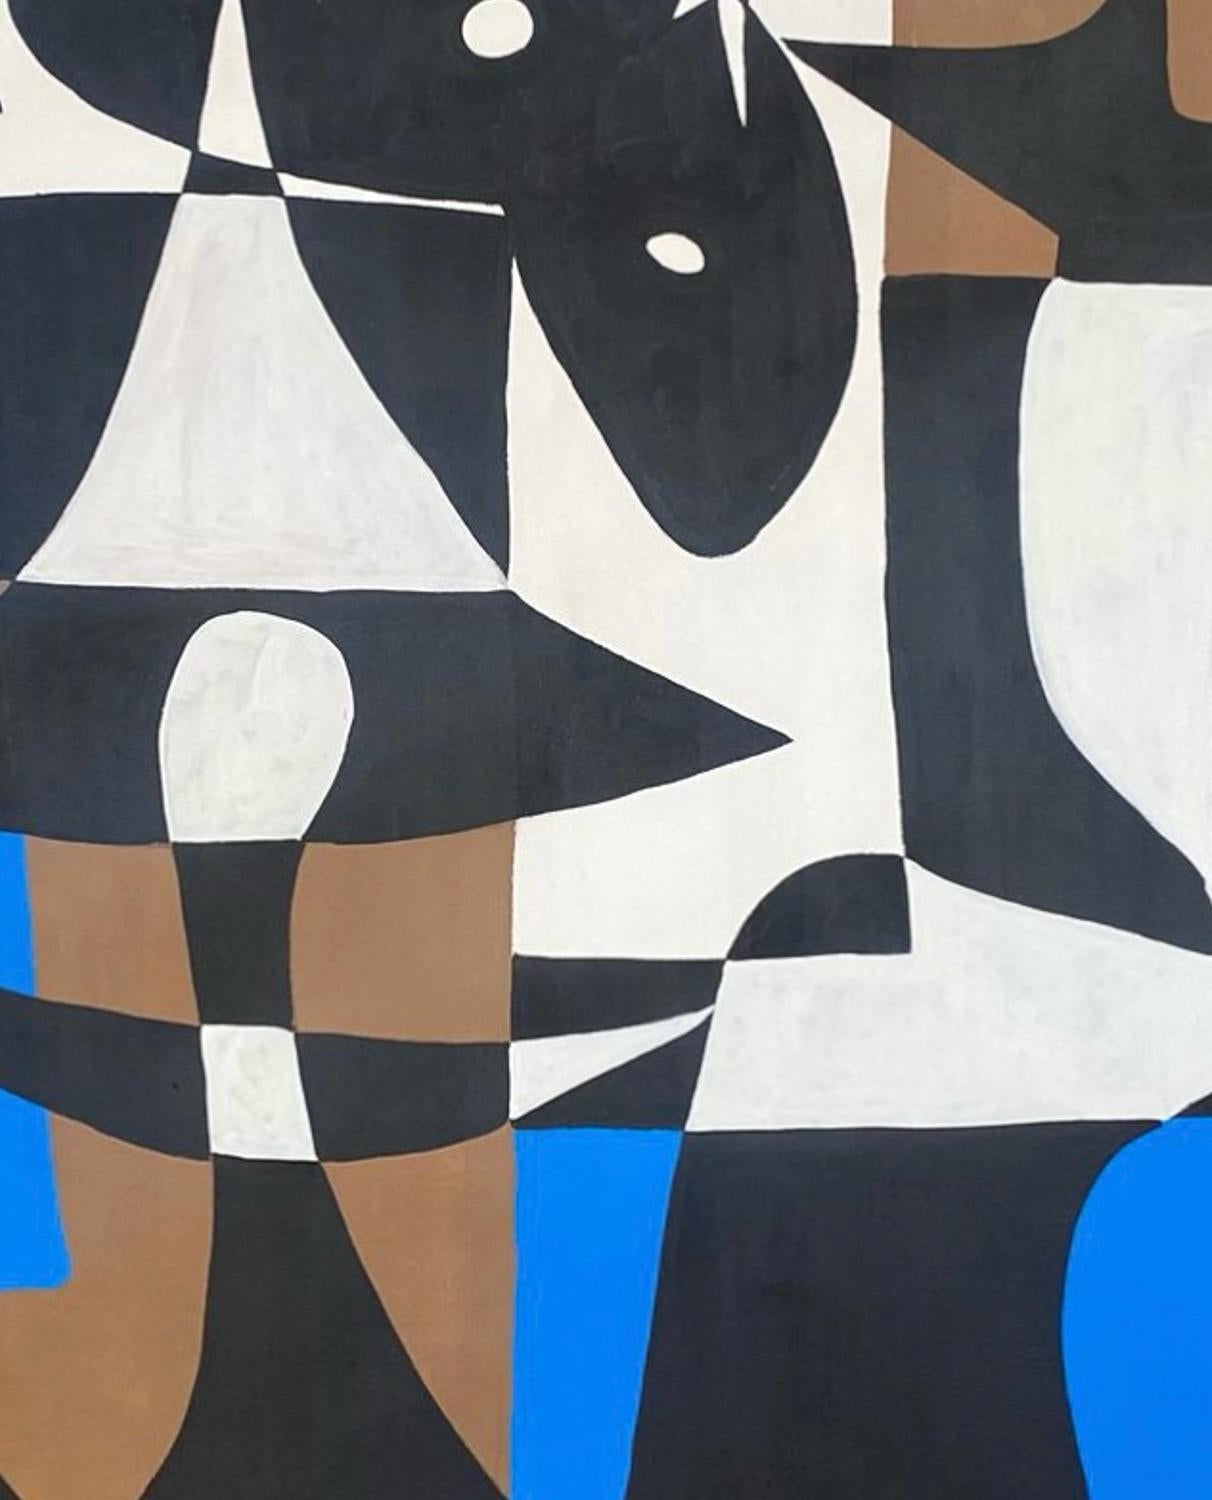 Art contemporain, peinture abstraite
Acrylique sur toile
160x270cm
Signé 
LIVRAISON GRATUITE ROLLE




A propos de l'artiste
Enrique Pichardo (Mexico, 1973) est diplômé de l'Escuela Nacional de Pintura, Escultura y Grabado (ENPEG) 